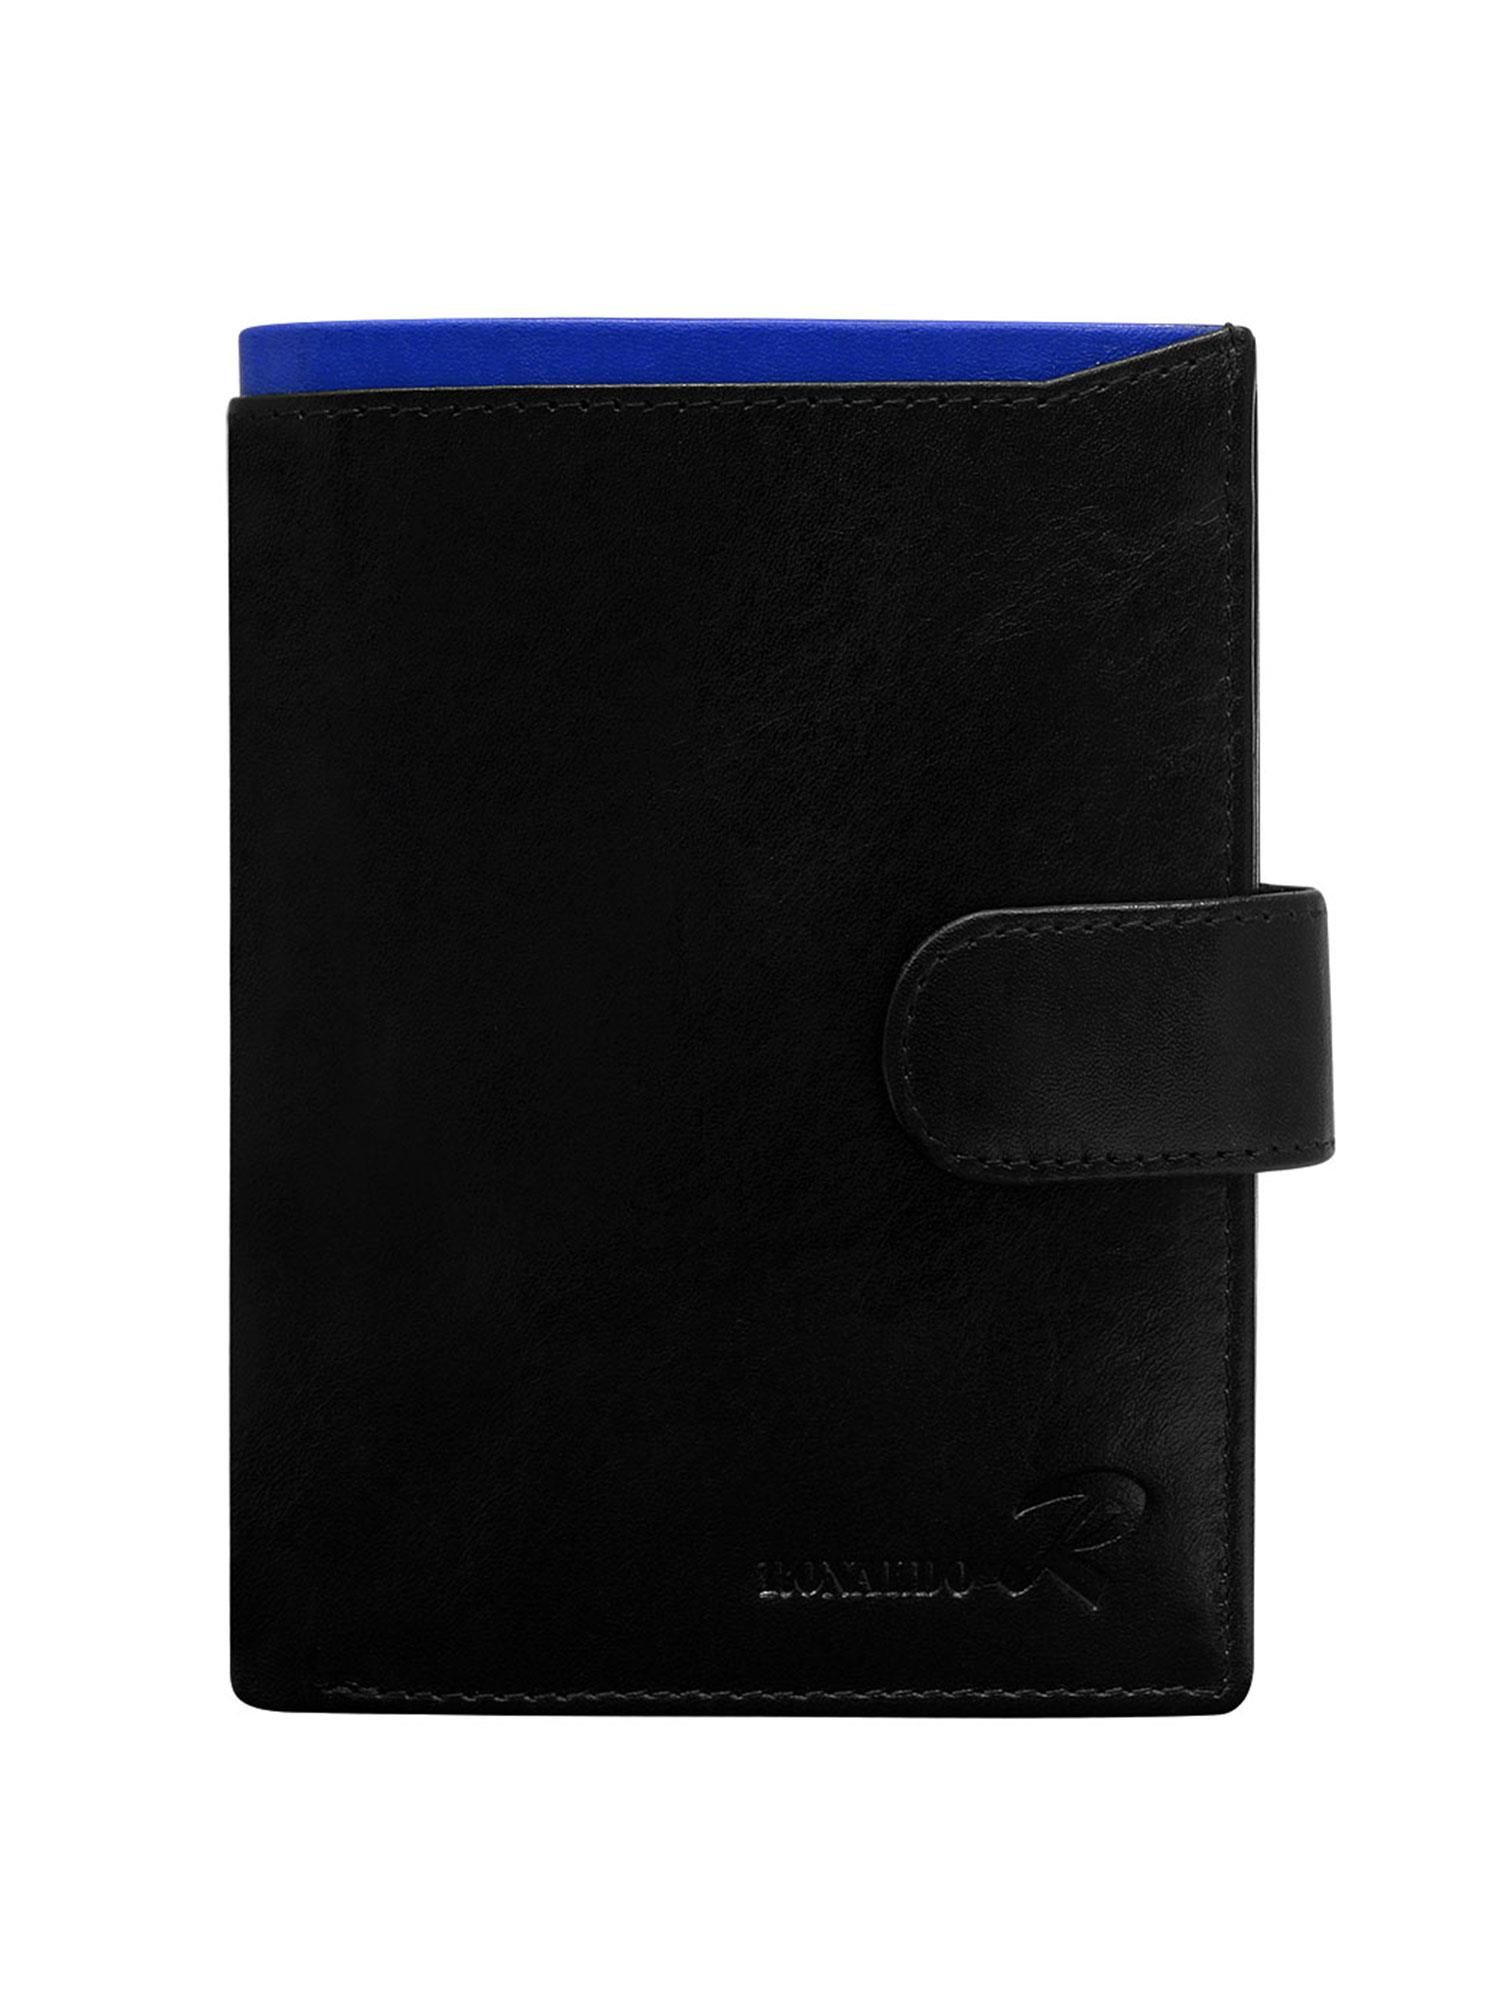 Peněženka CE PR černá a modrá jedna velikost model 17355402 - FPrice